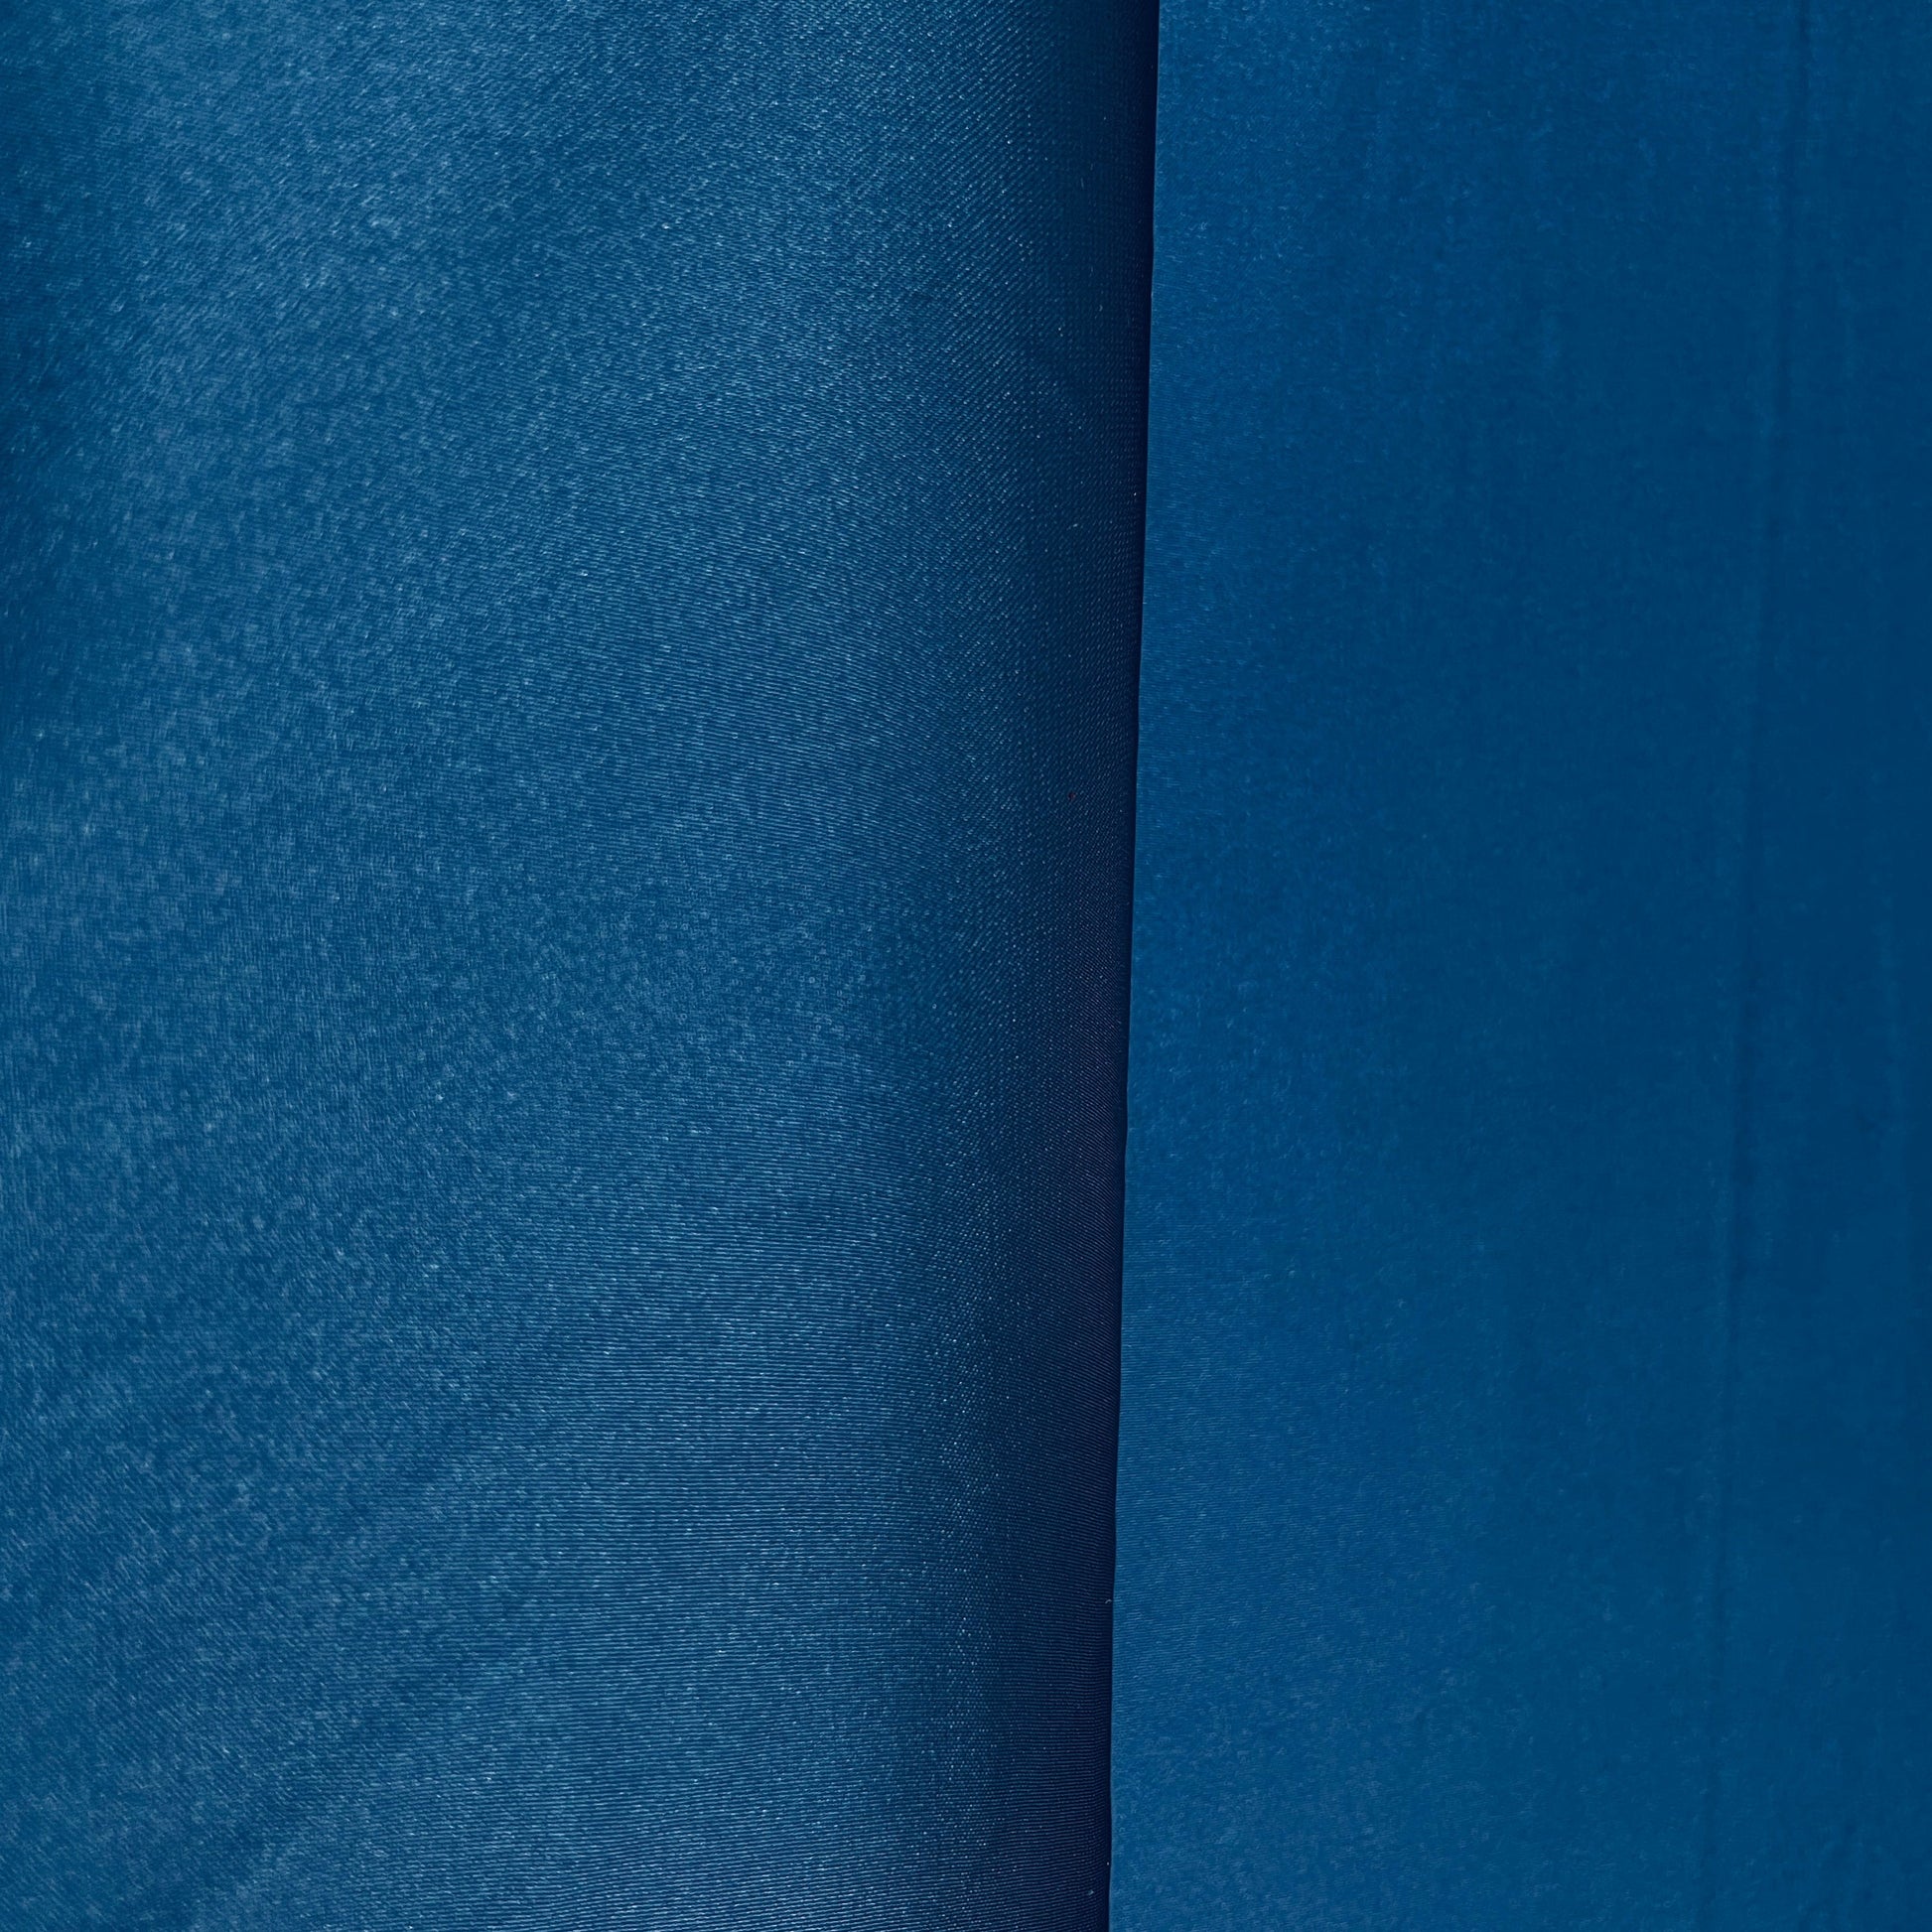 Teal Blue Armani Satin Fabric - TradeUNO